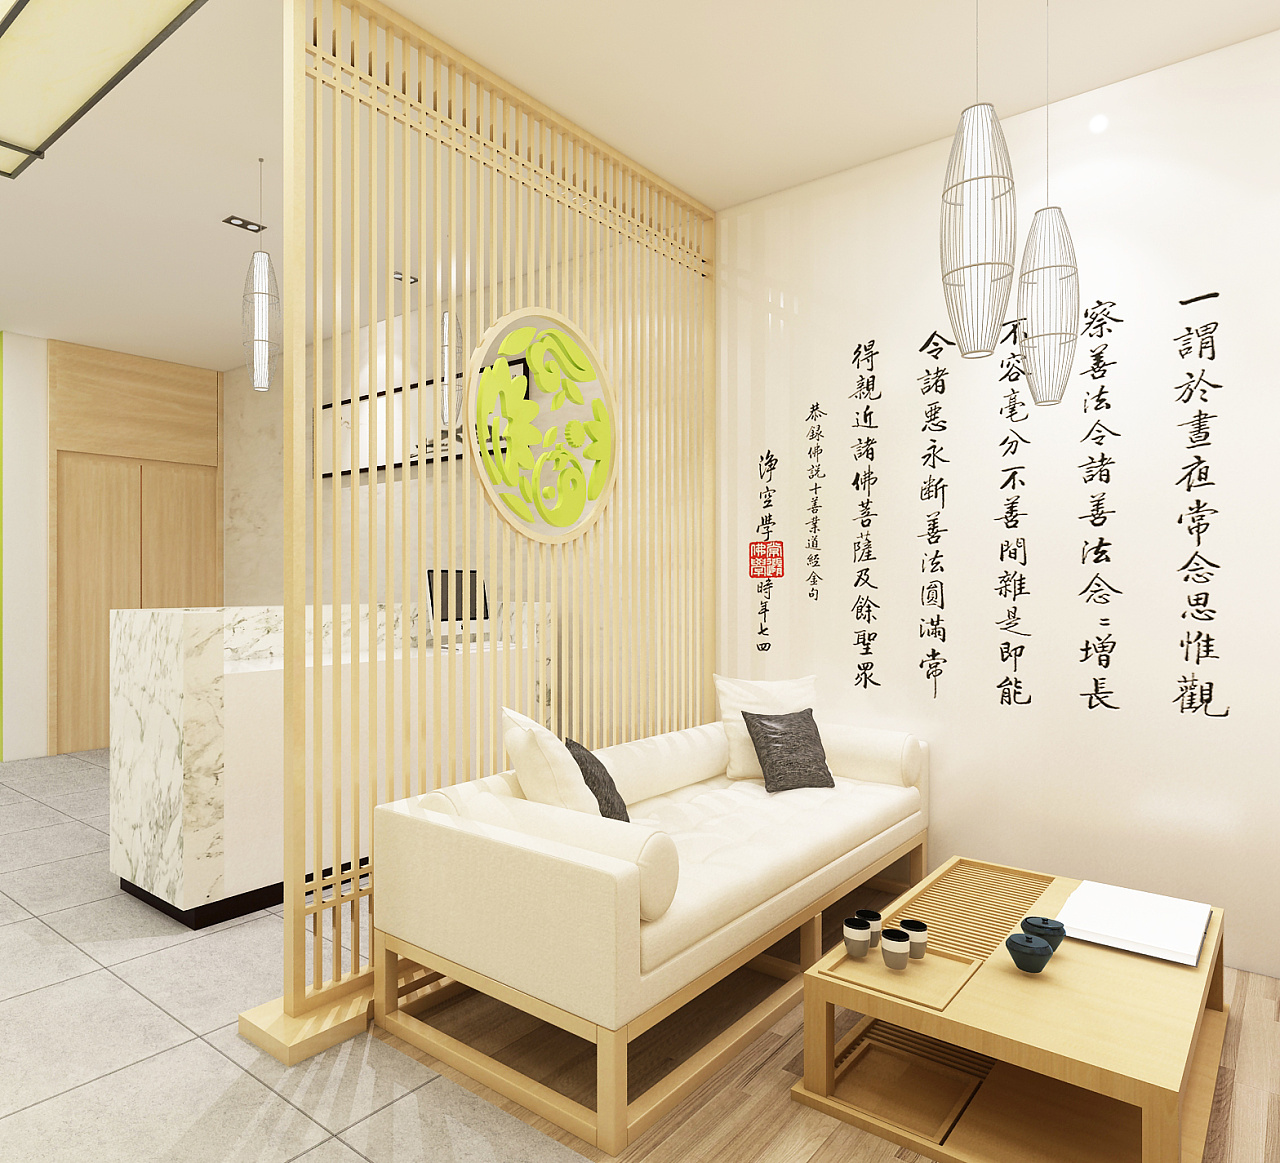 新中式禅意茶楼餐厅cad施工图全套下载 - 易图网